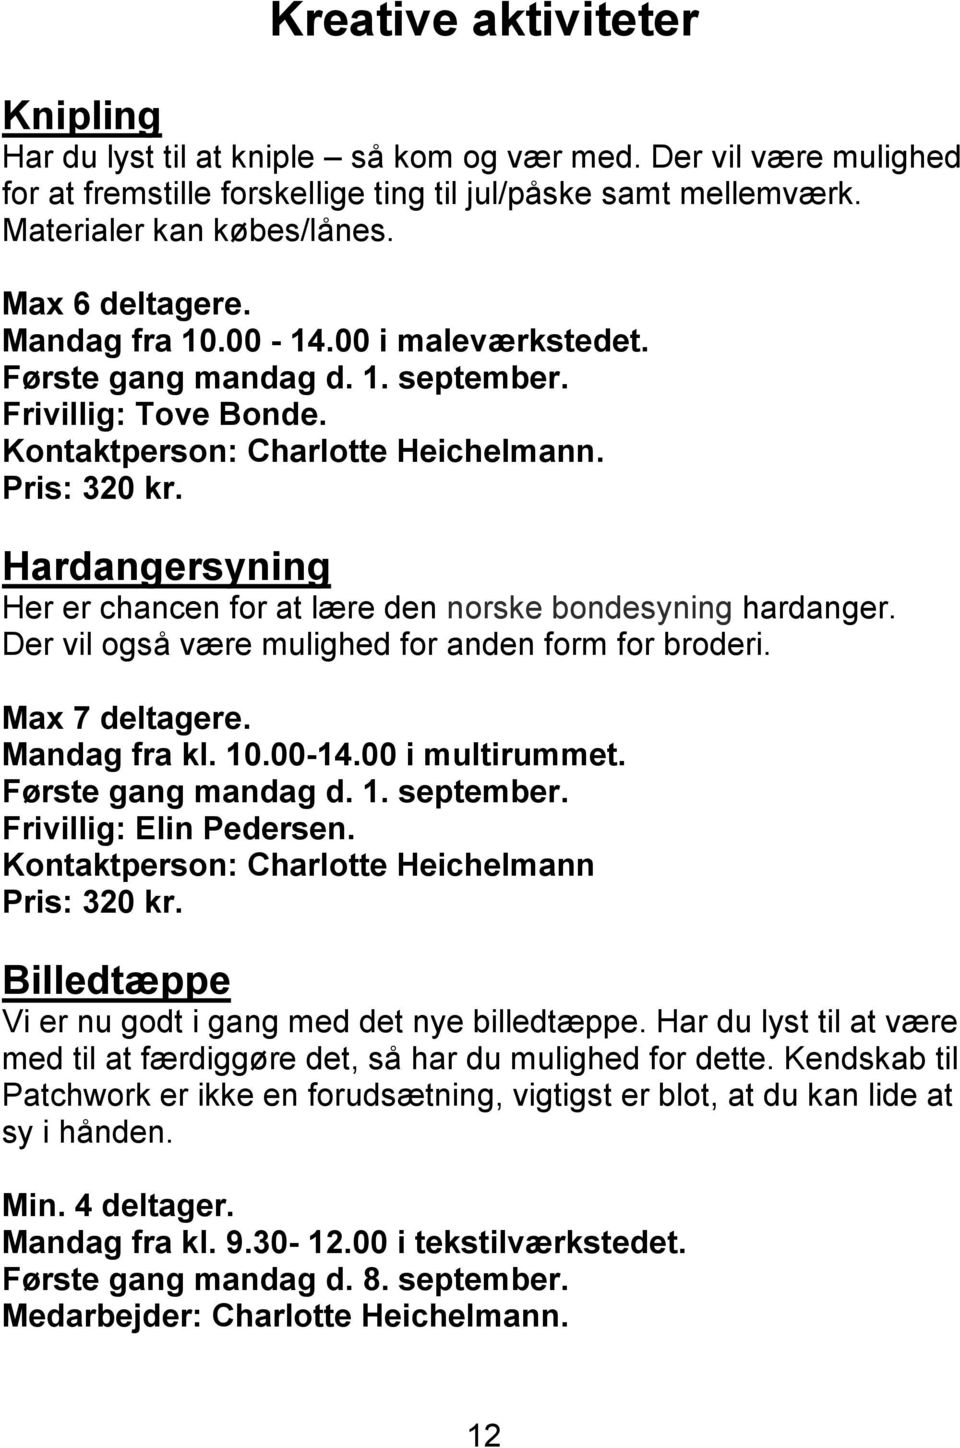 Hardangersyning Her er chancen for at lære den norske bondesyning hardanger. Der vil også være mulighed for anden form for broderi. Max 7 deltagere. Mandag fra kl. 10.00-14.00 i multirummet.